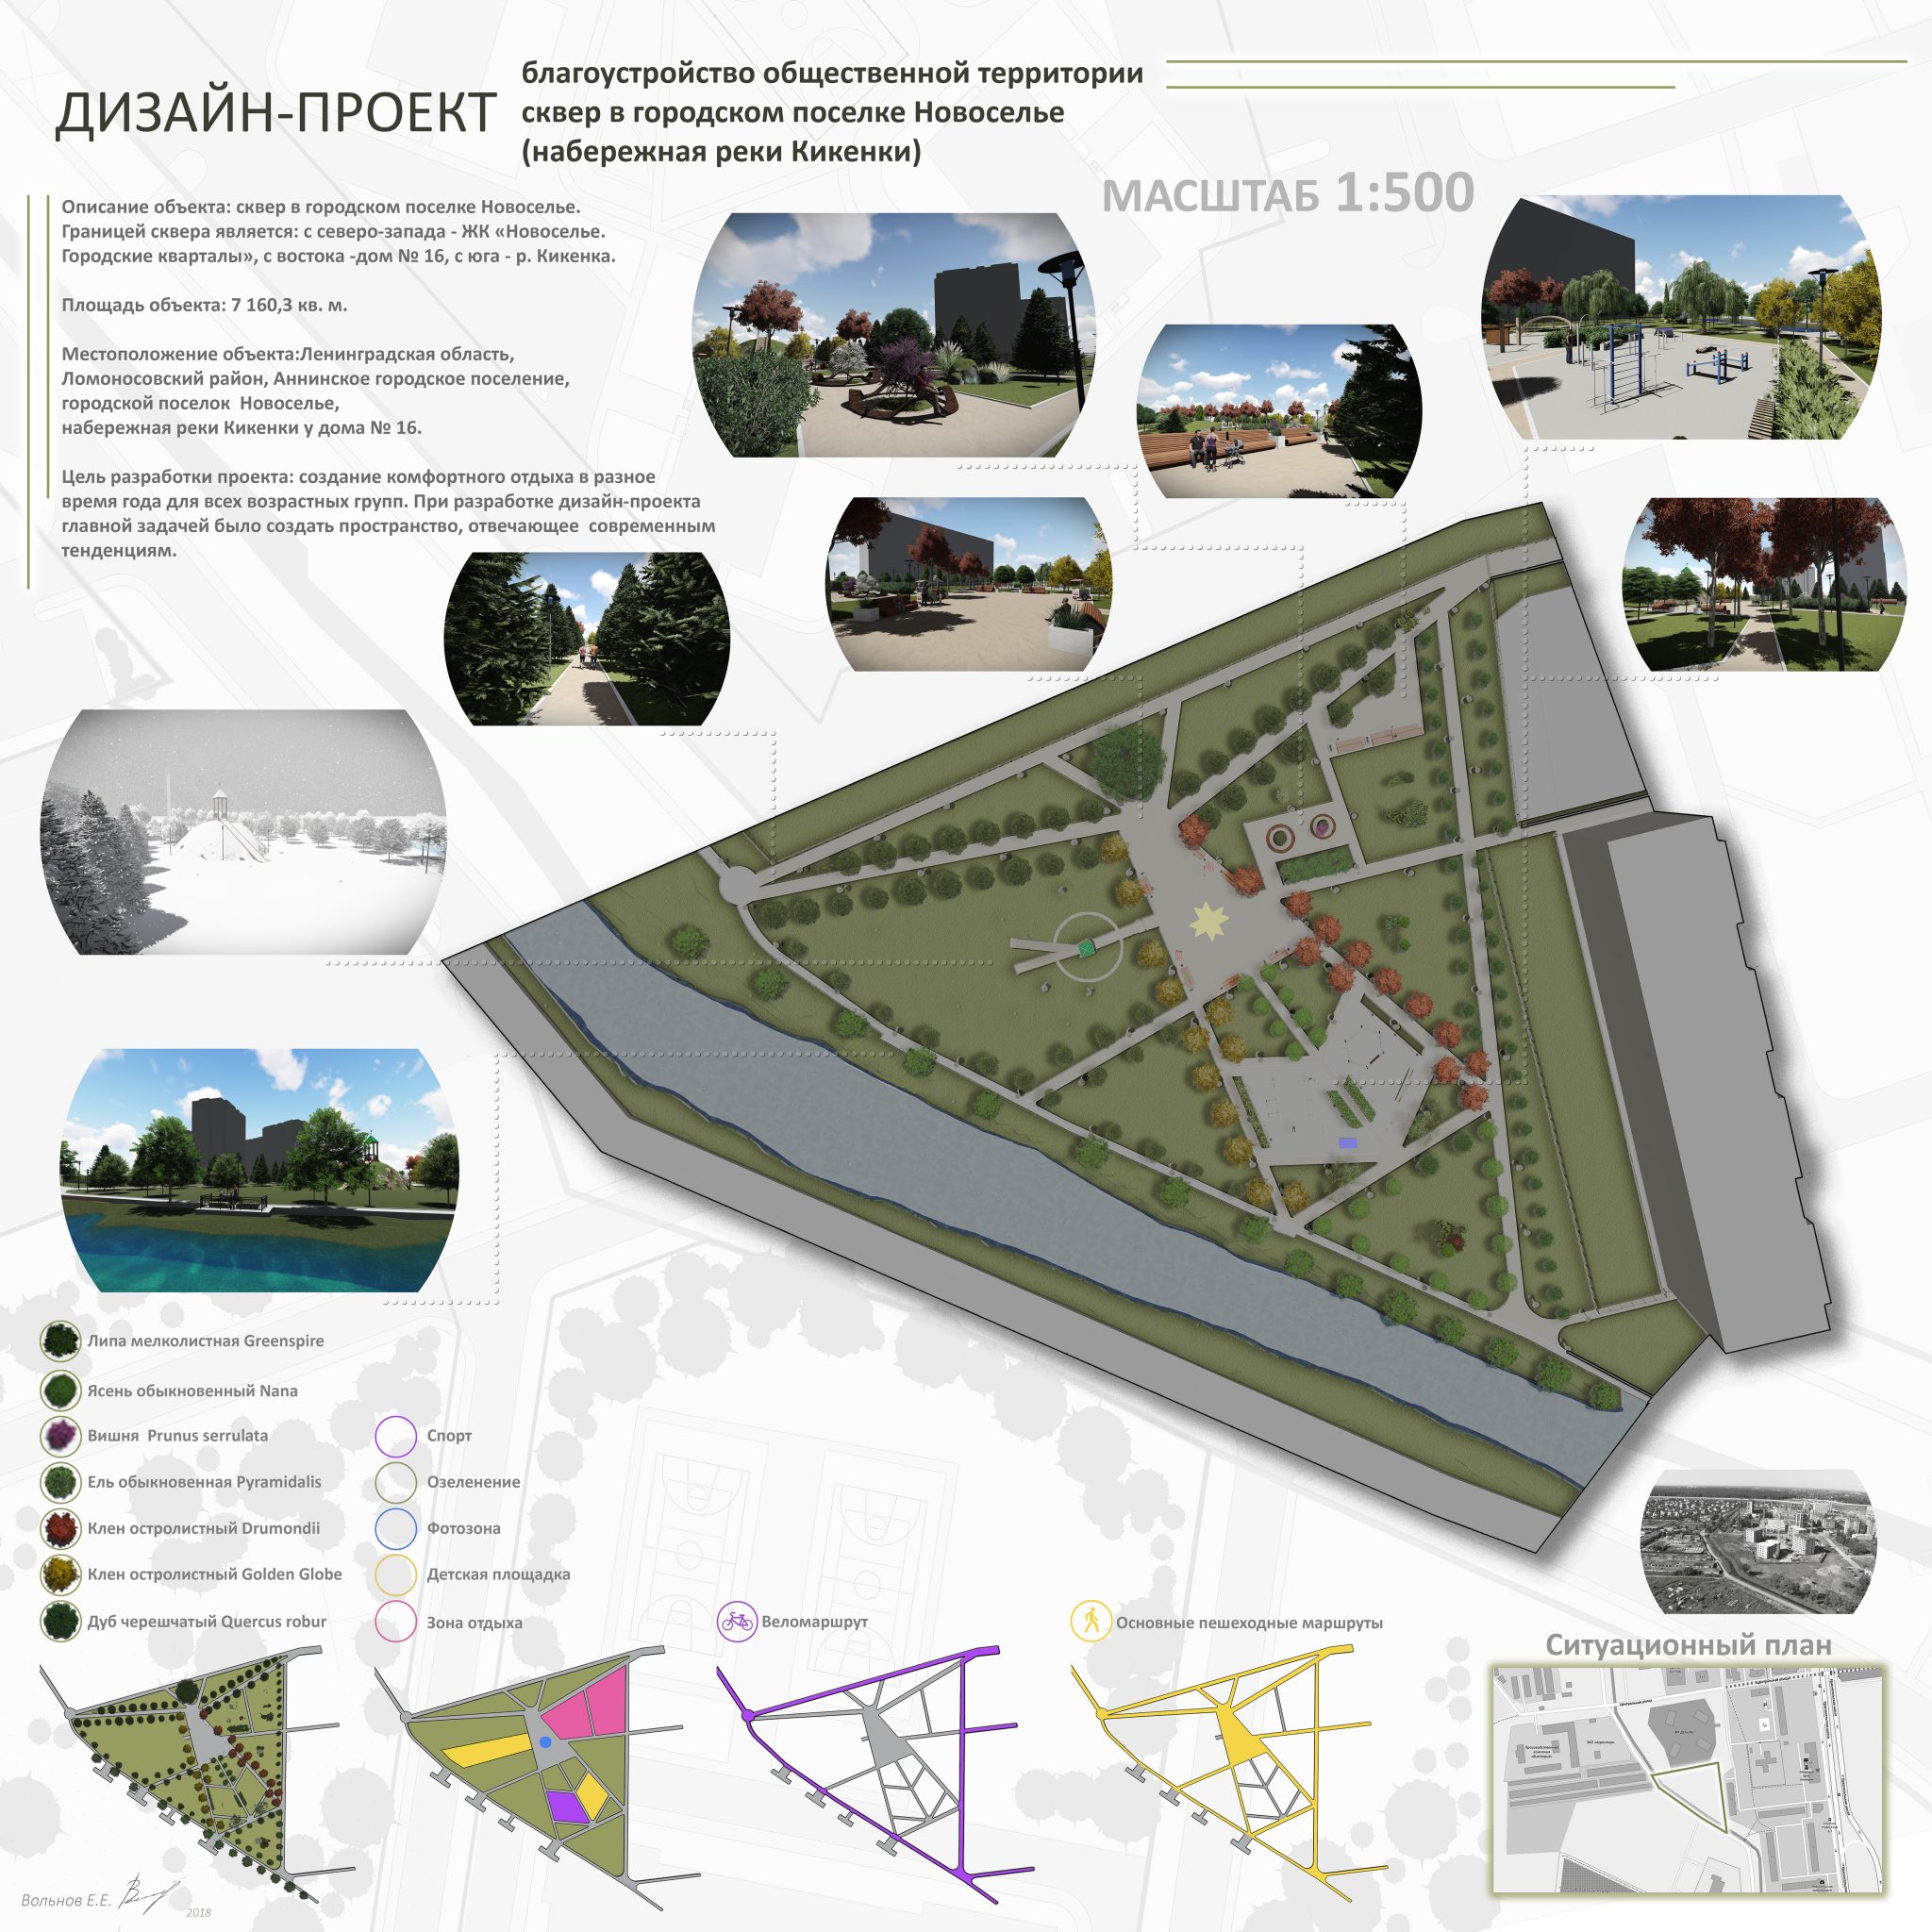 Проект благоустройства г.п. Новоселье по программе “Формирование комфортной городской среды”